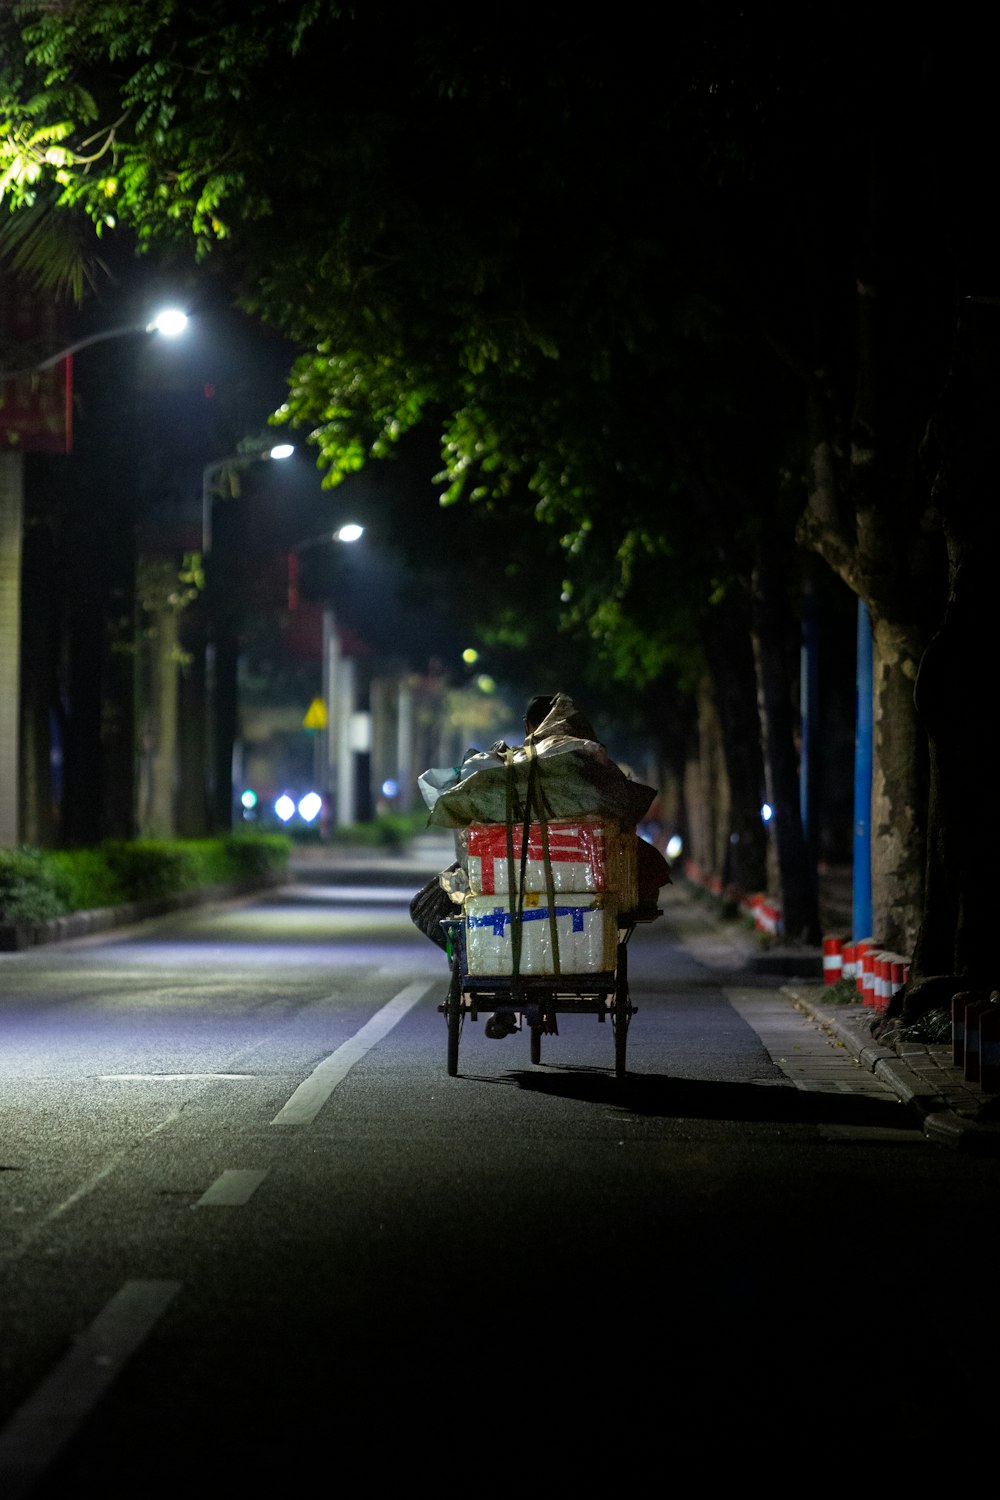 une personne conduisant une charrette dans une rue la nuit